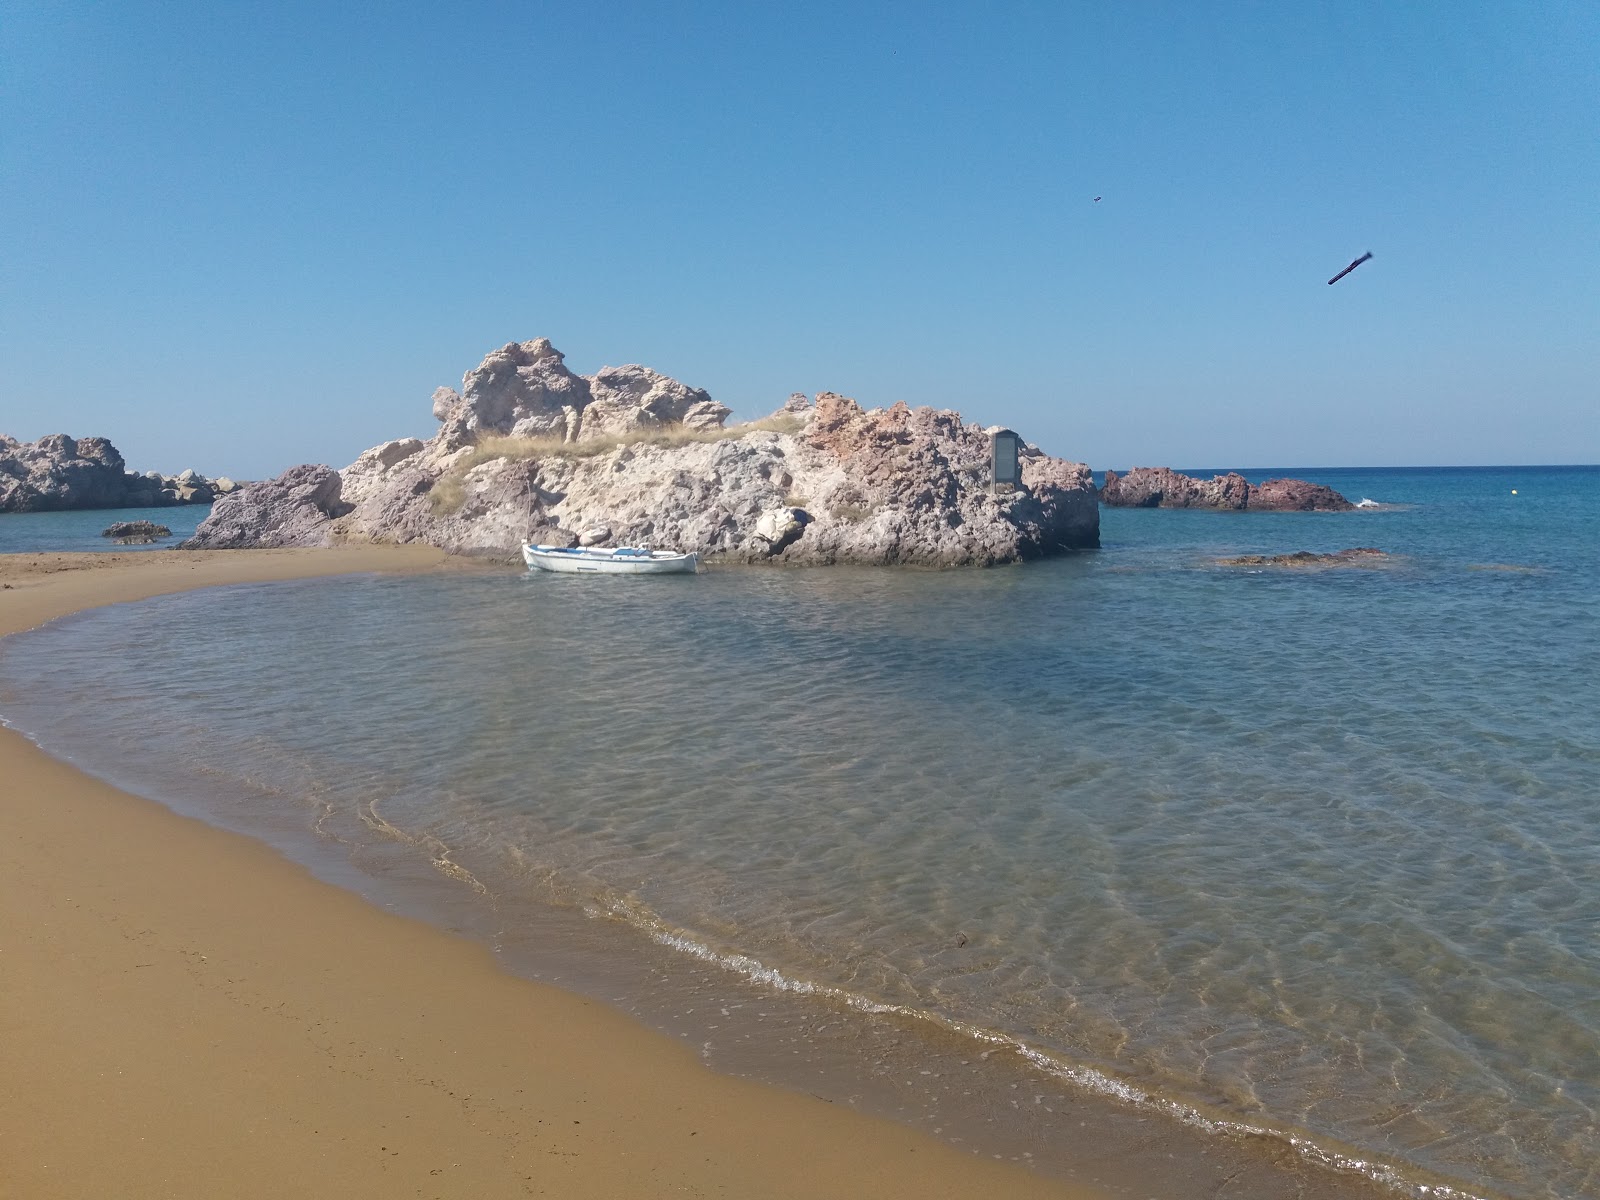 Fotografie cu Agios Ioannis beach - locul popular printre cunoscătorii de relaxare